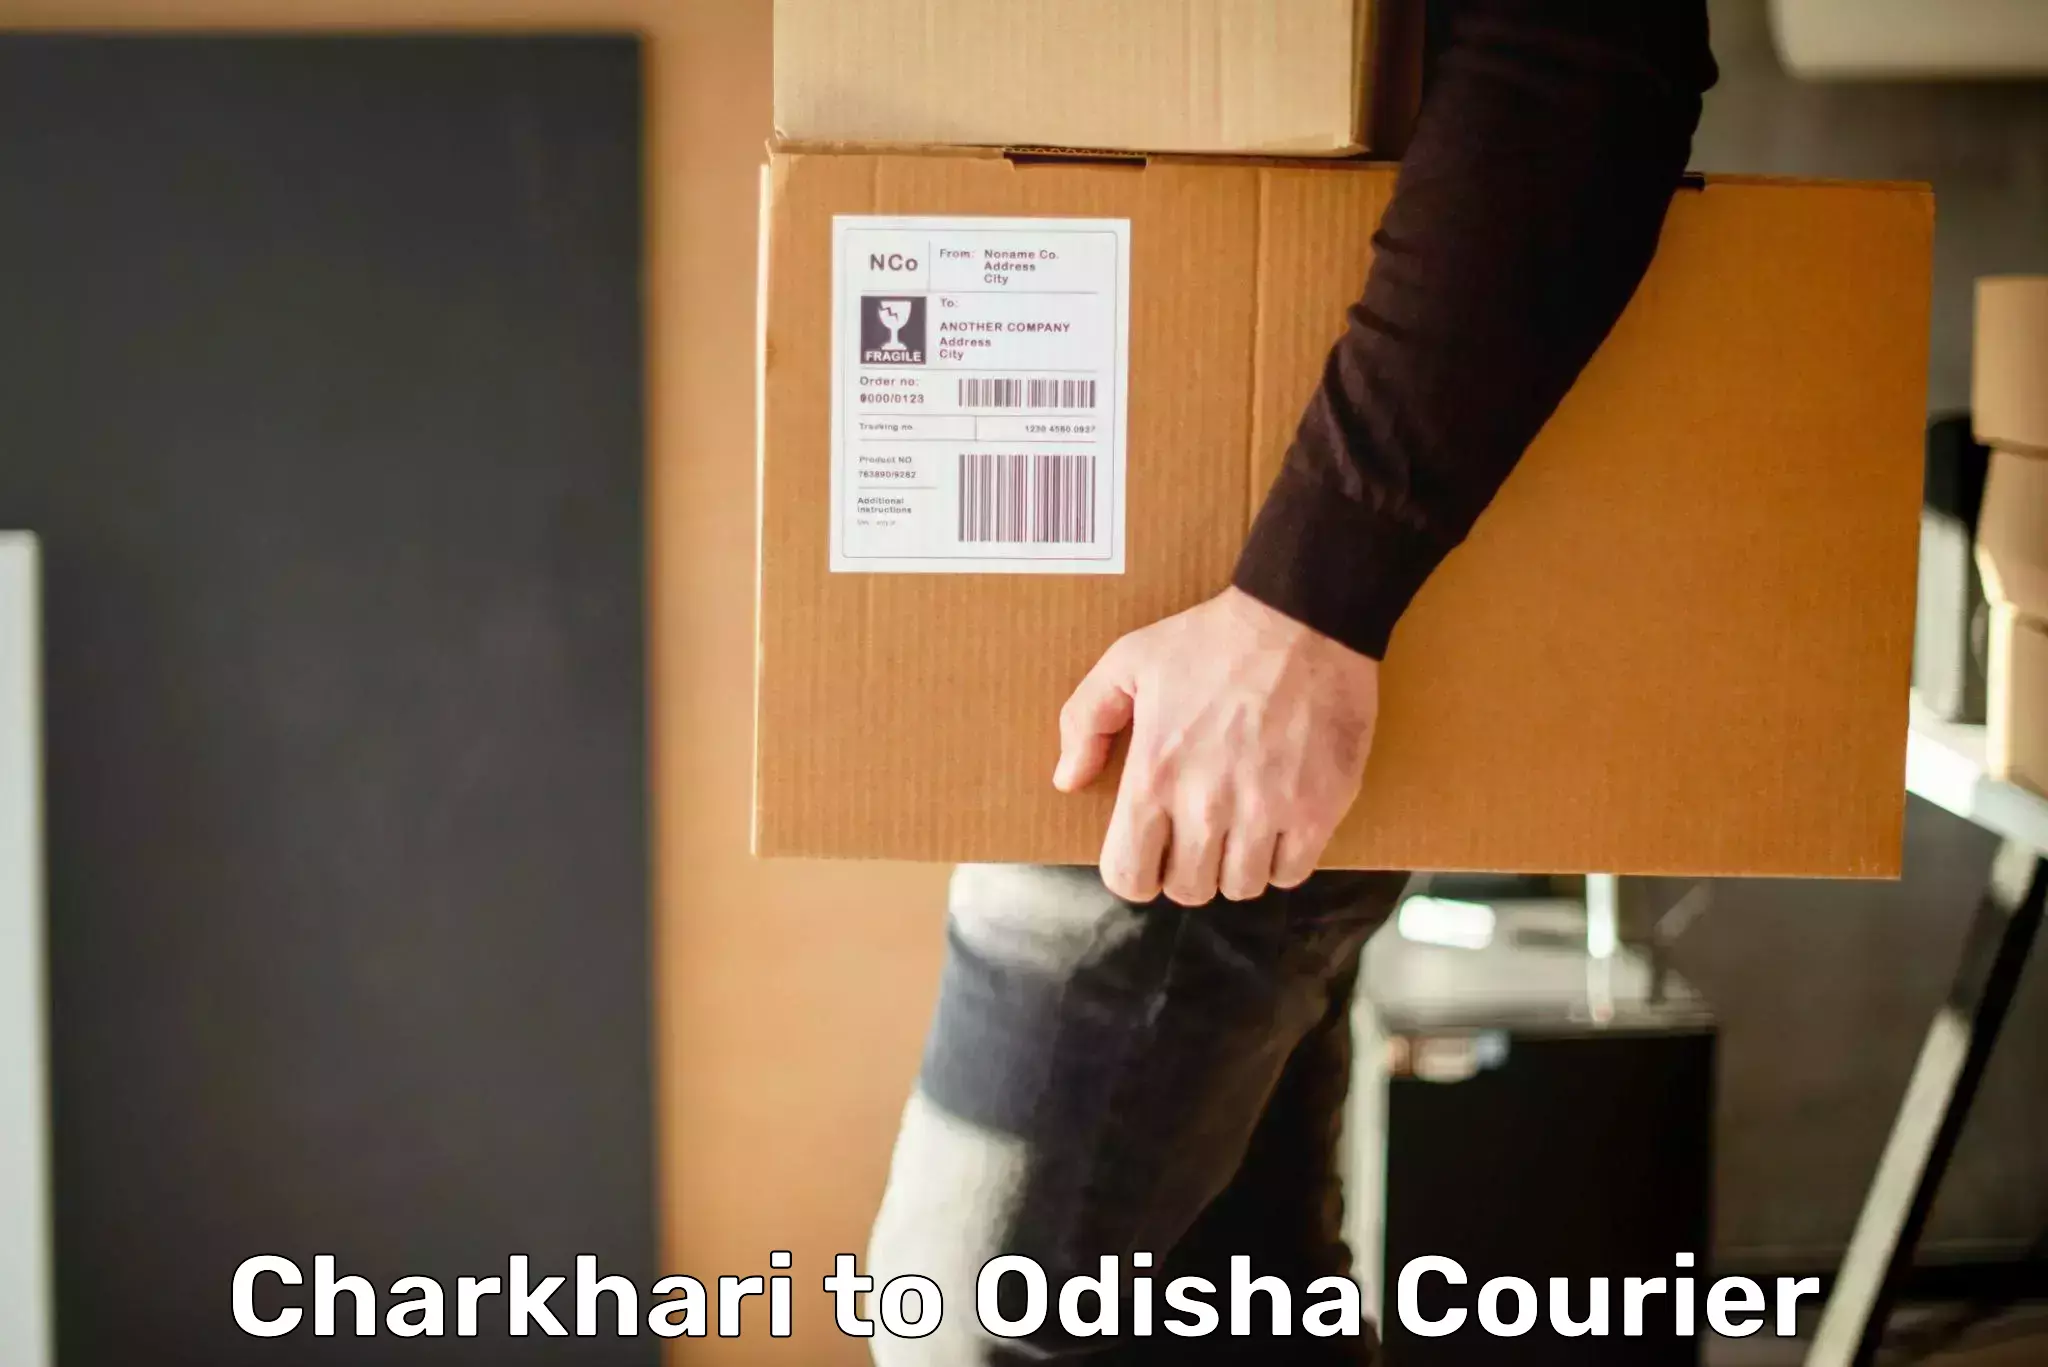 Express courier capabilities Charkhari to Mohana